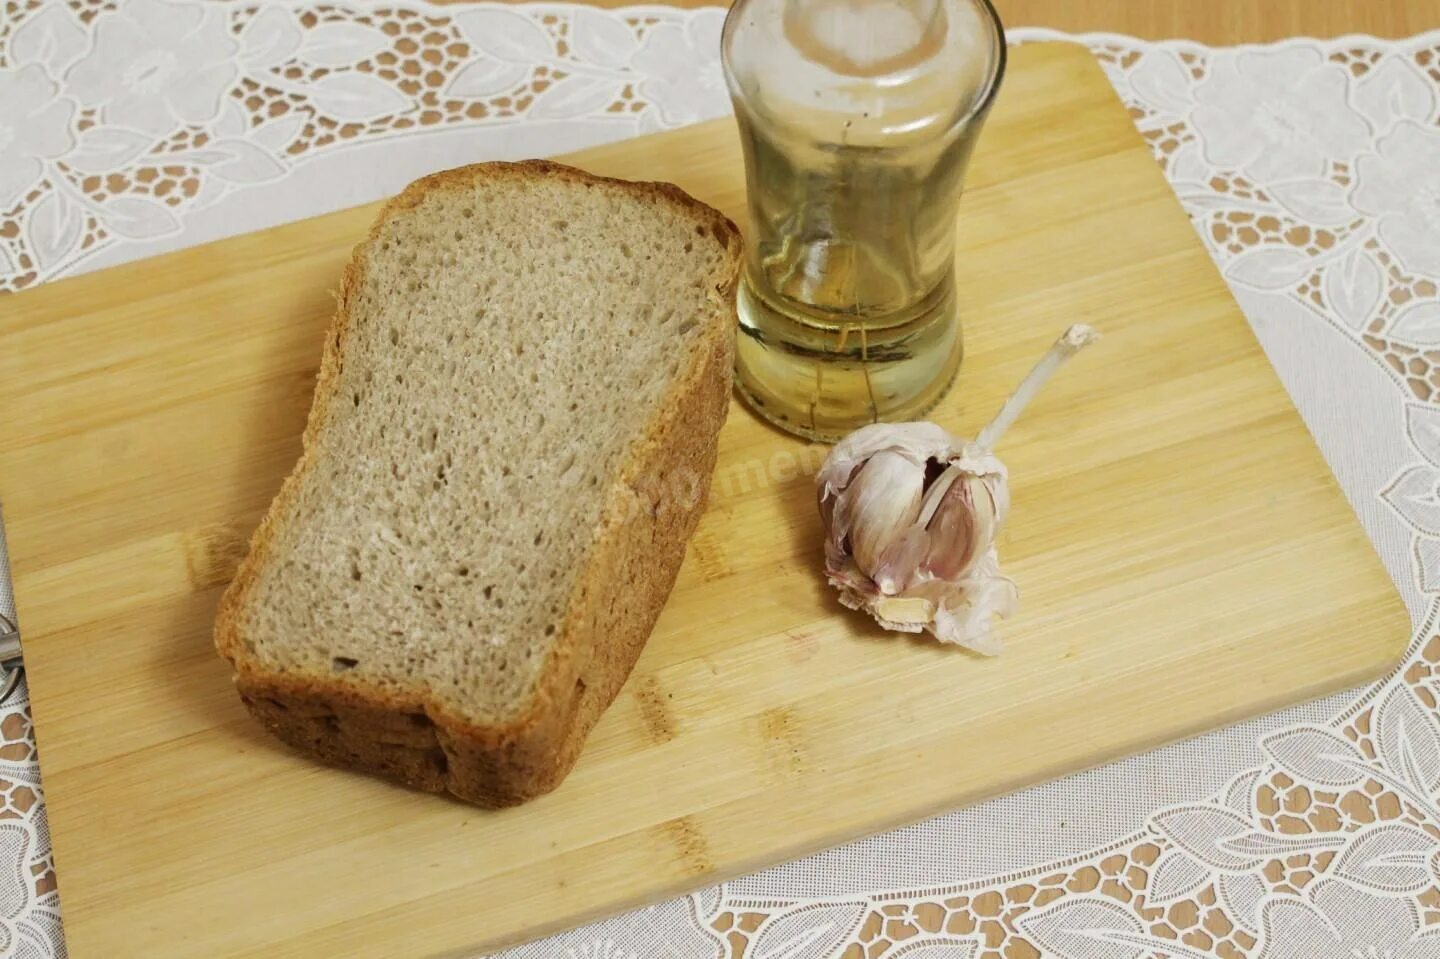 Хлеб с маслом можно есть. Хлеб с подсолнечным маслом. Хлеб с маслом и солью. Хлеб натертый чесноком. Хлеб с растительным маслом.